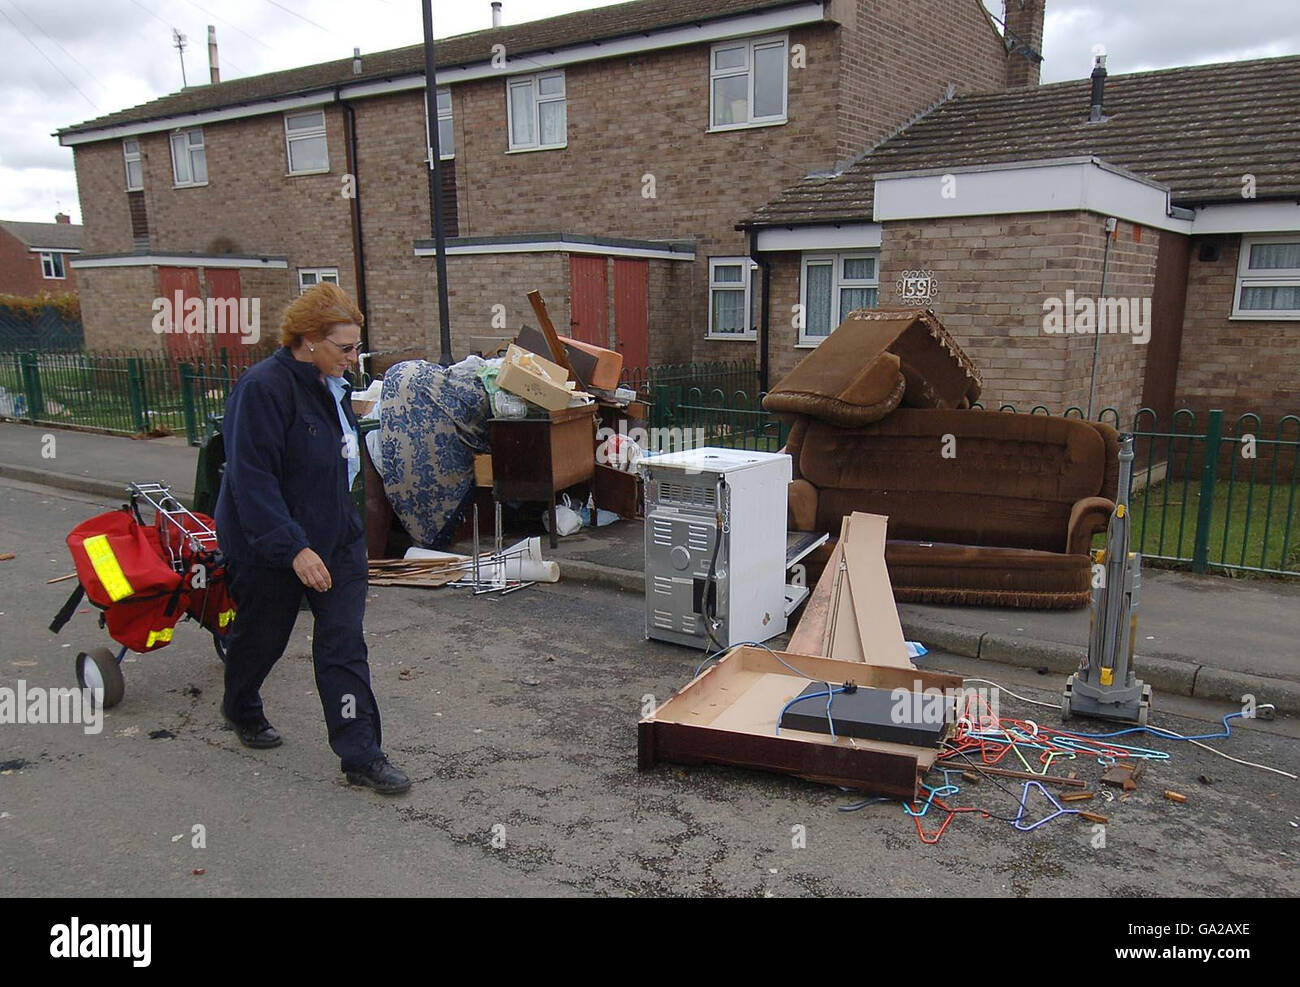 Großbritannien wird von Überschwemmungen heimgesucht. Ein Postarbeiter geht an zerstörten Besitztümern in toll Bar, in der Nähe von Doncaster, vorbei, die von schweren Überschwemmungen getroffen wurden. Stockfoto